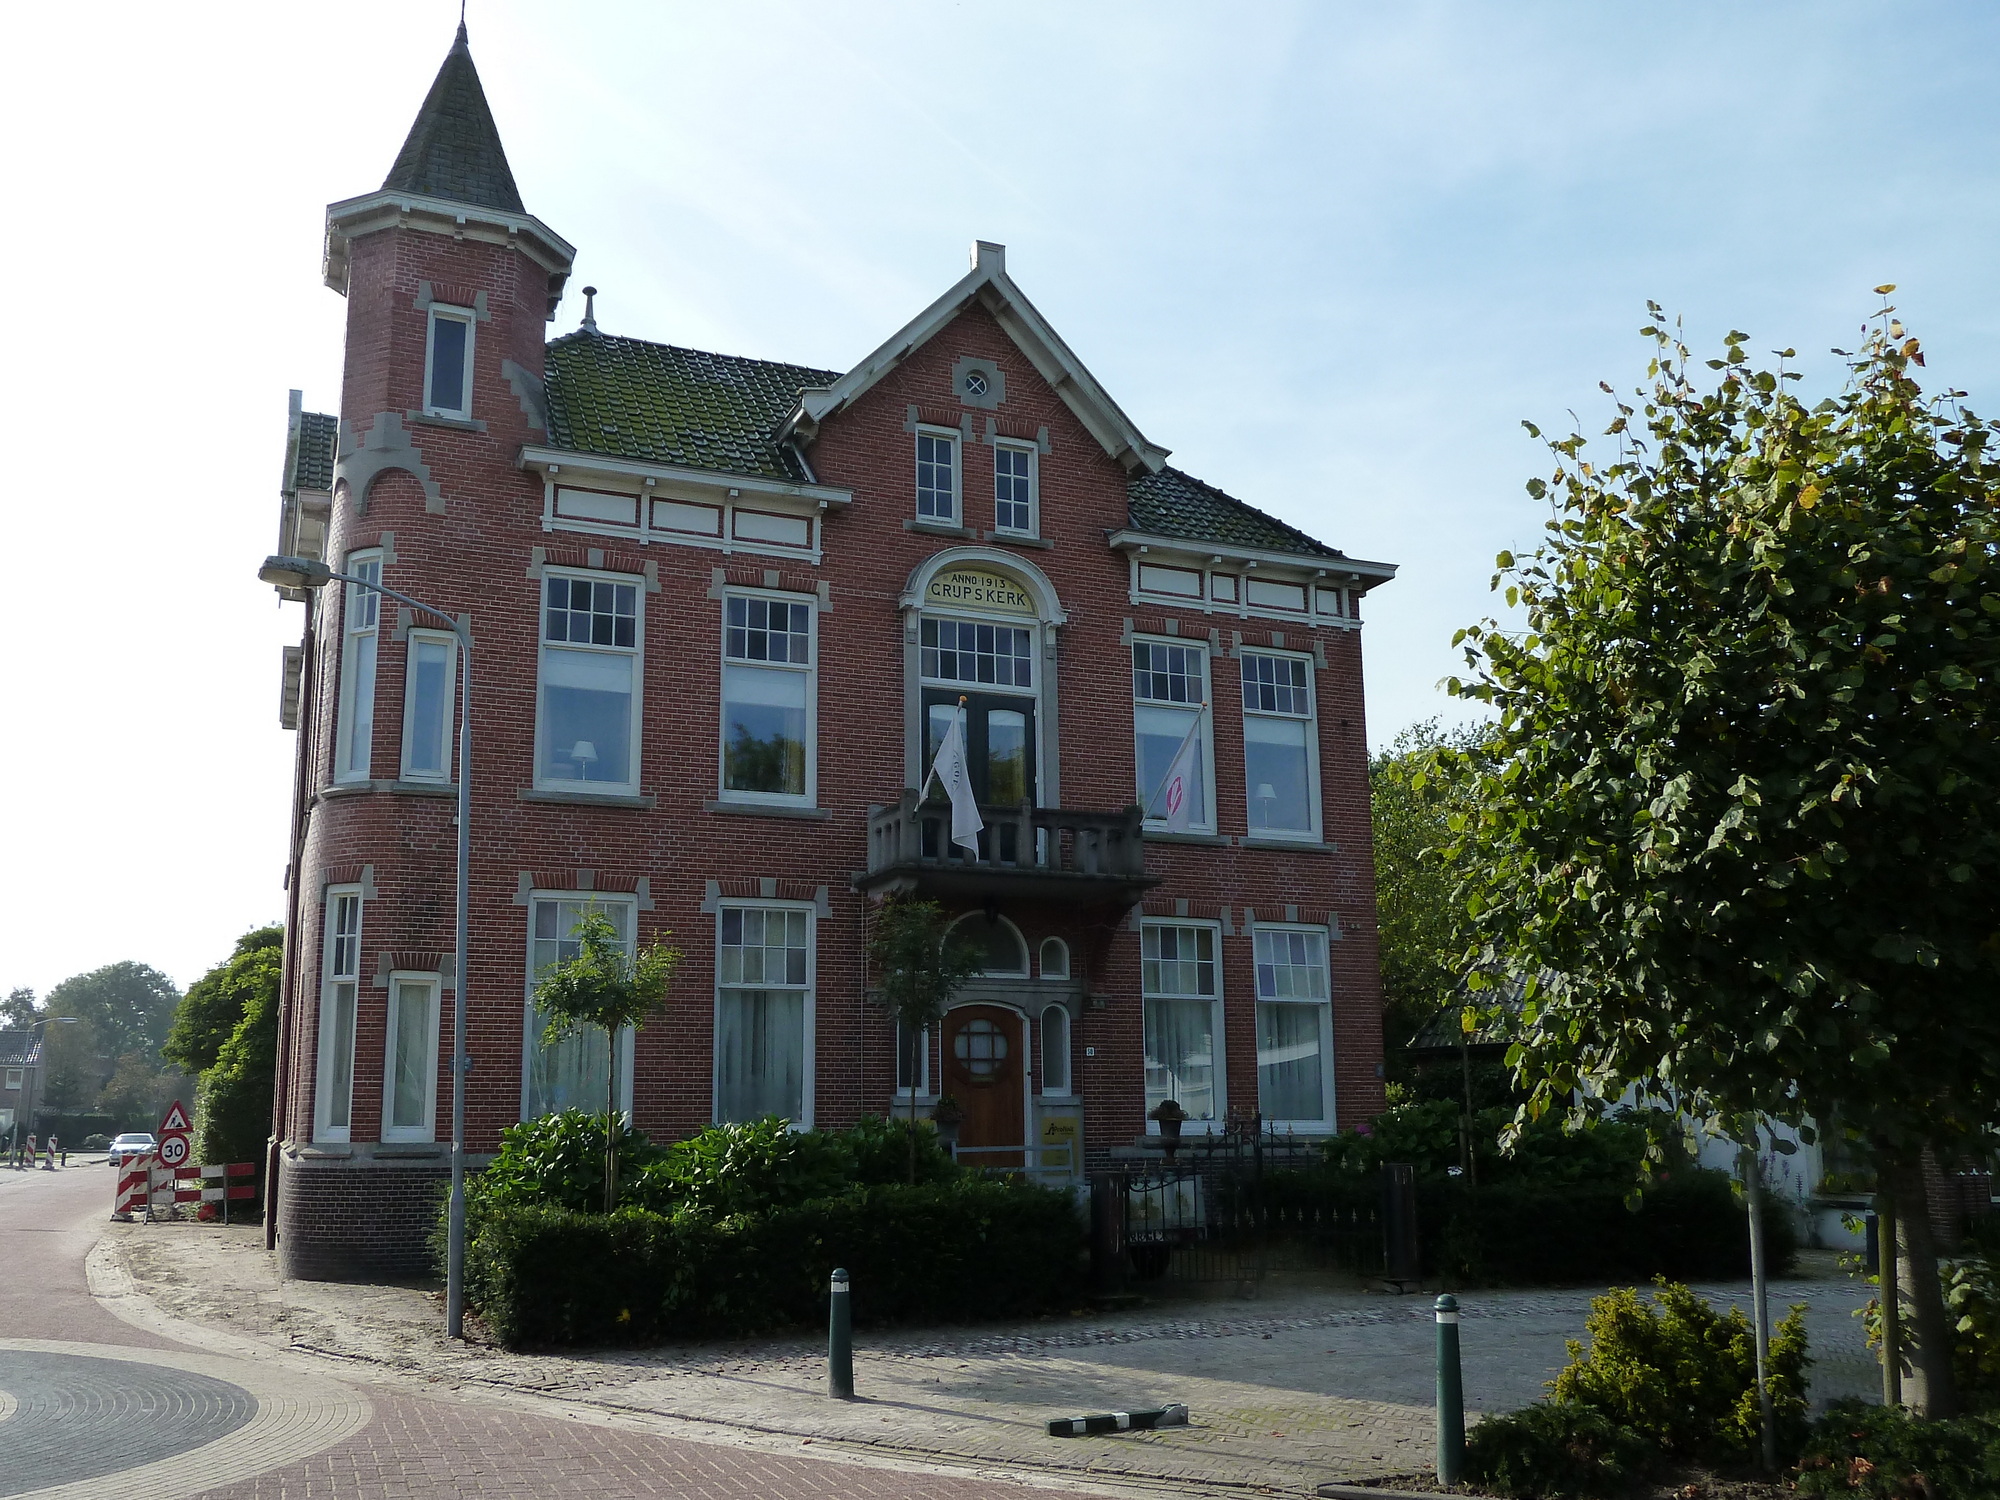 Het oude gemeentehuis van Grijpskerk uit 1913 (hoek Molenstraat-Jonkerslaan) werd gebouwd ter vervanging van een ouder gemeentehuis uit 1887 aan overkant van de straat (hoek Herestraat-Jonkerslaan). Voor 1887 huurde de gemeente ruimte in het logement Hotel Vogelzang.